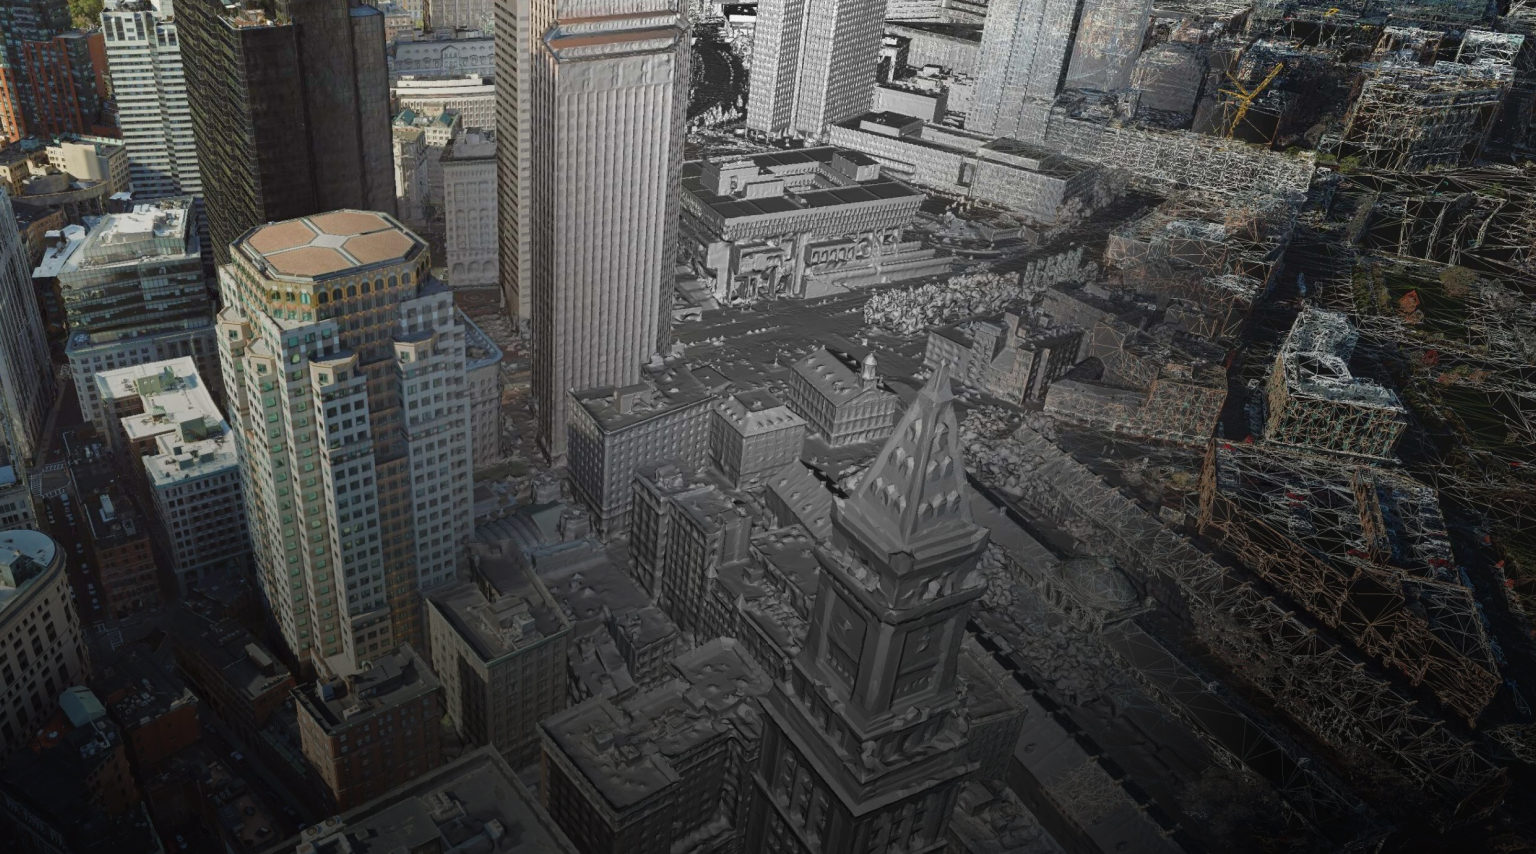 Imagen fotogramétrica de una zona céntrica con edificios grandes y pequeños en 3D